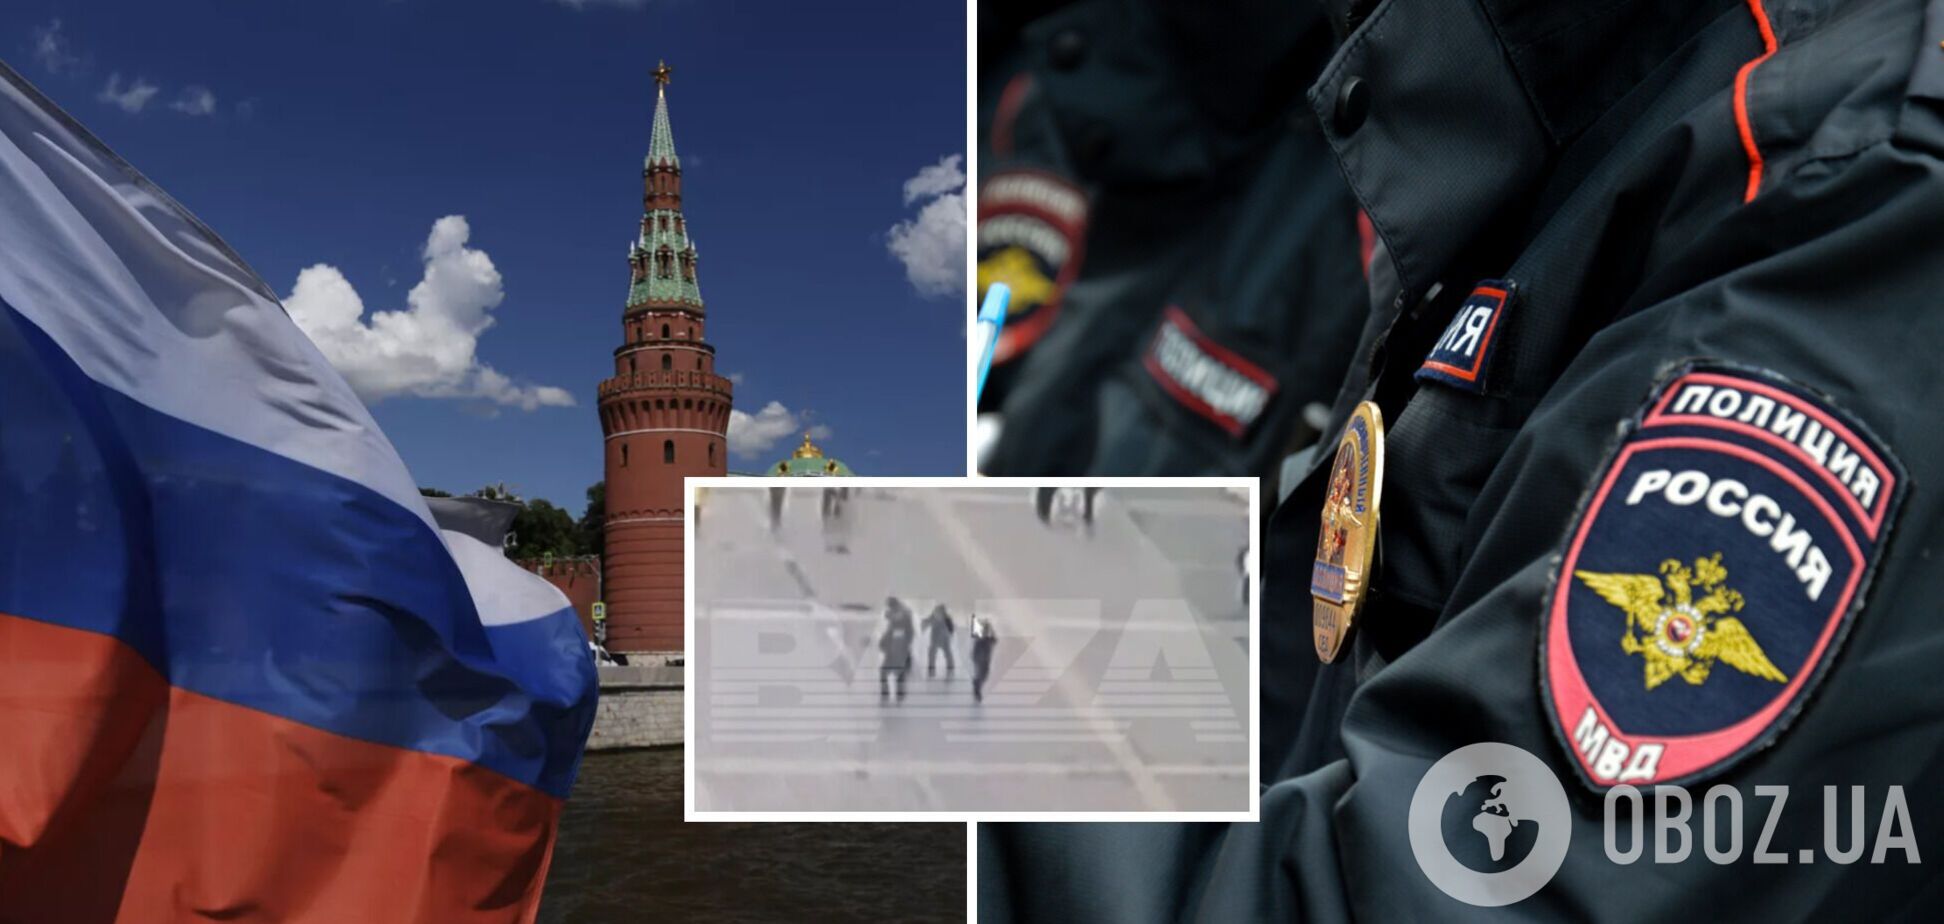 Под стенами Кремля в Москве сторонник Украины напал на троих полицейских. Видео